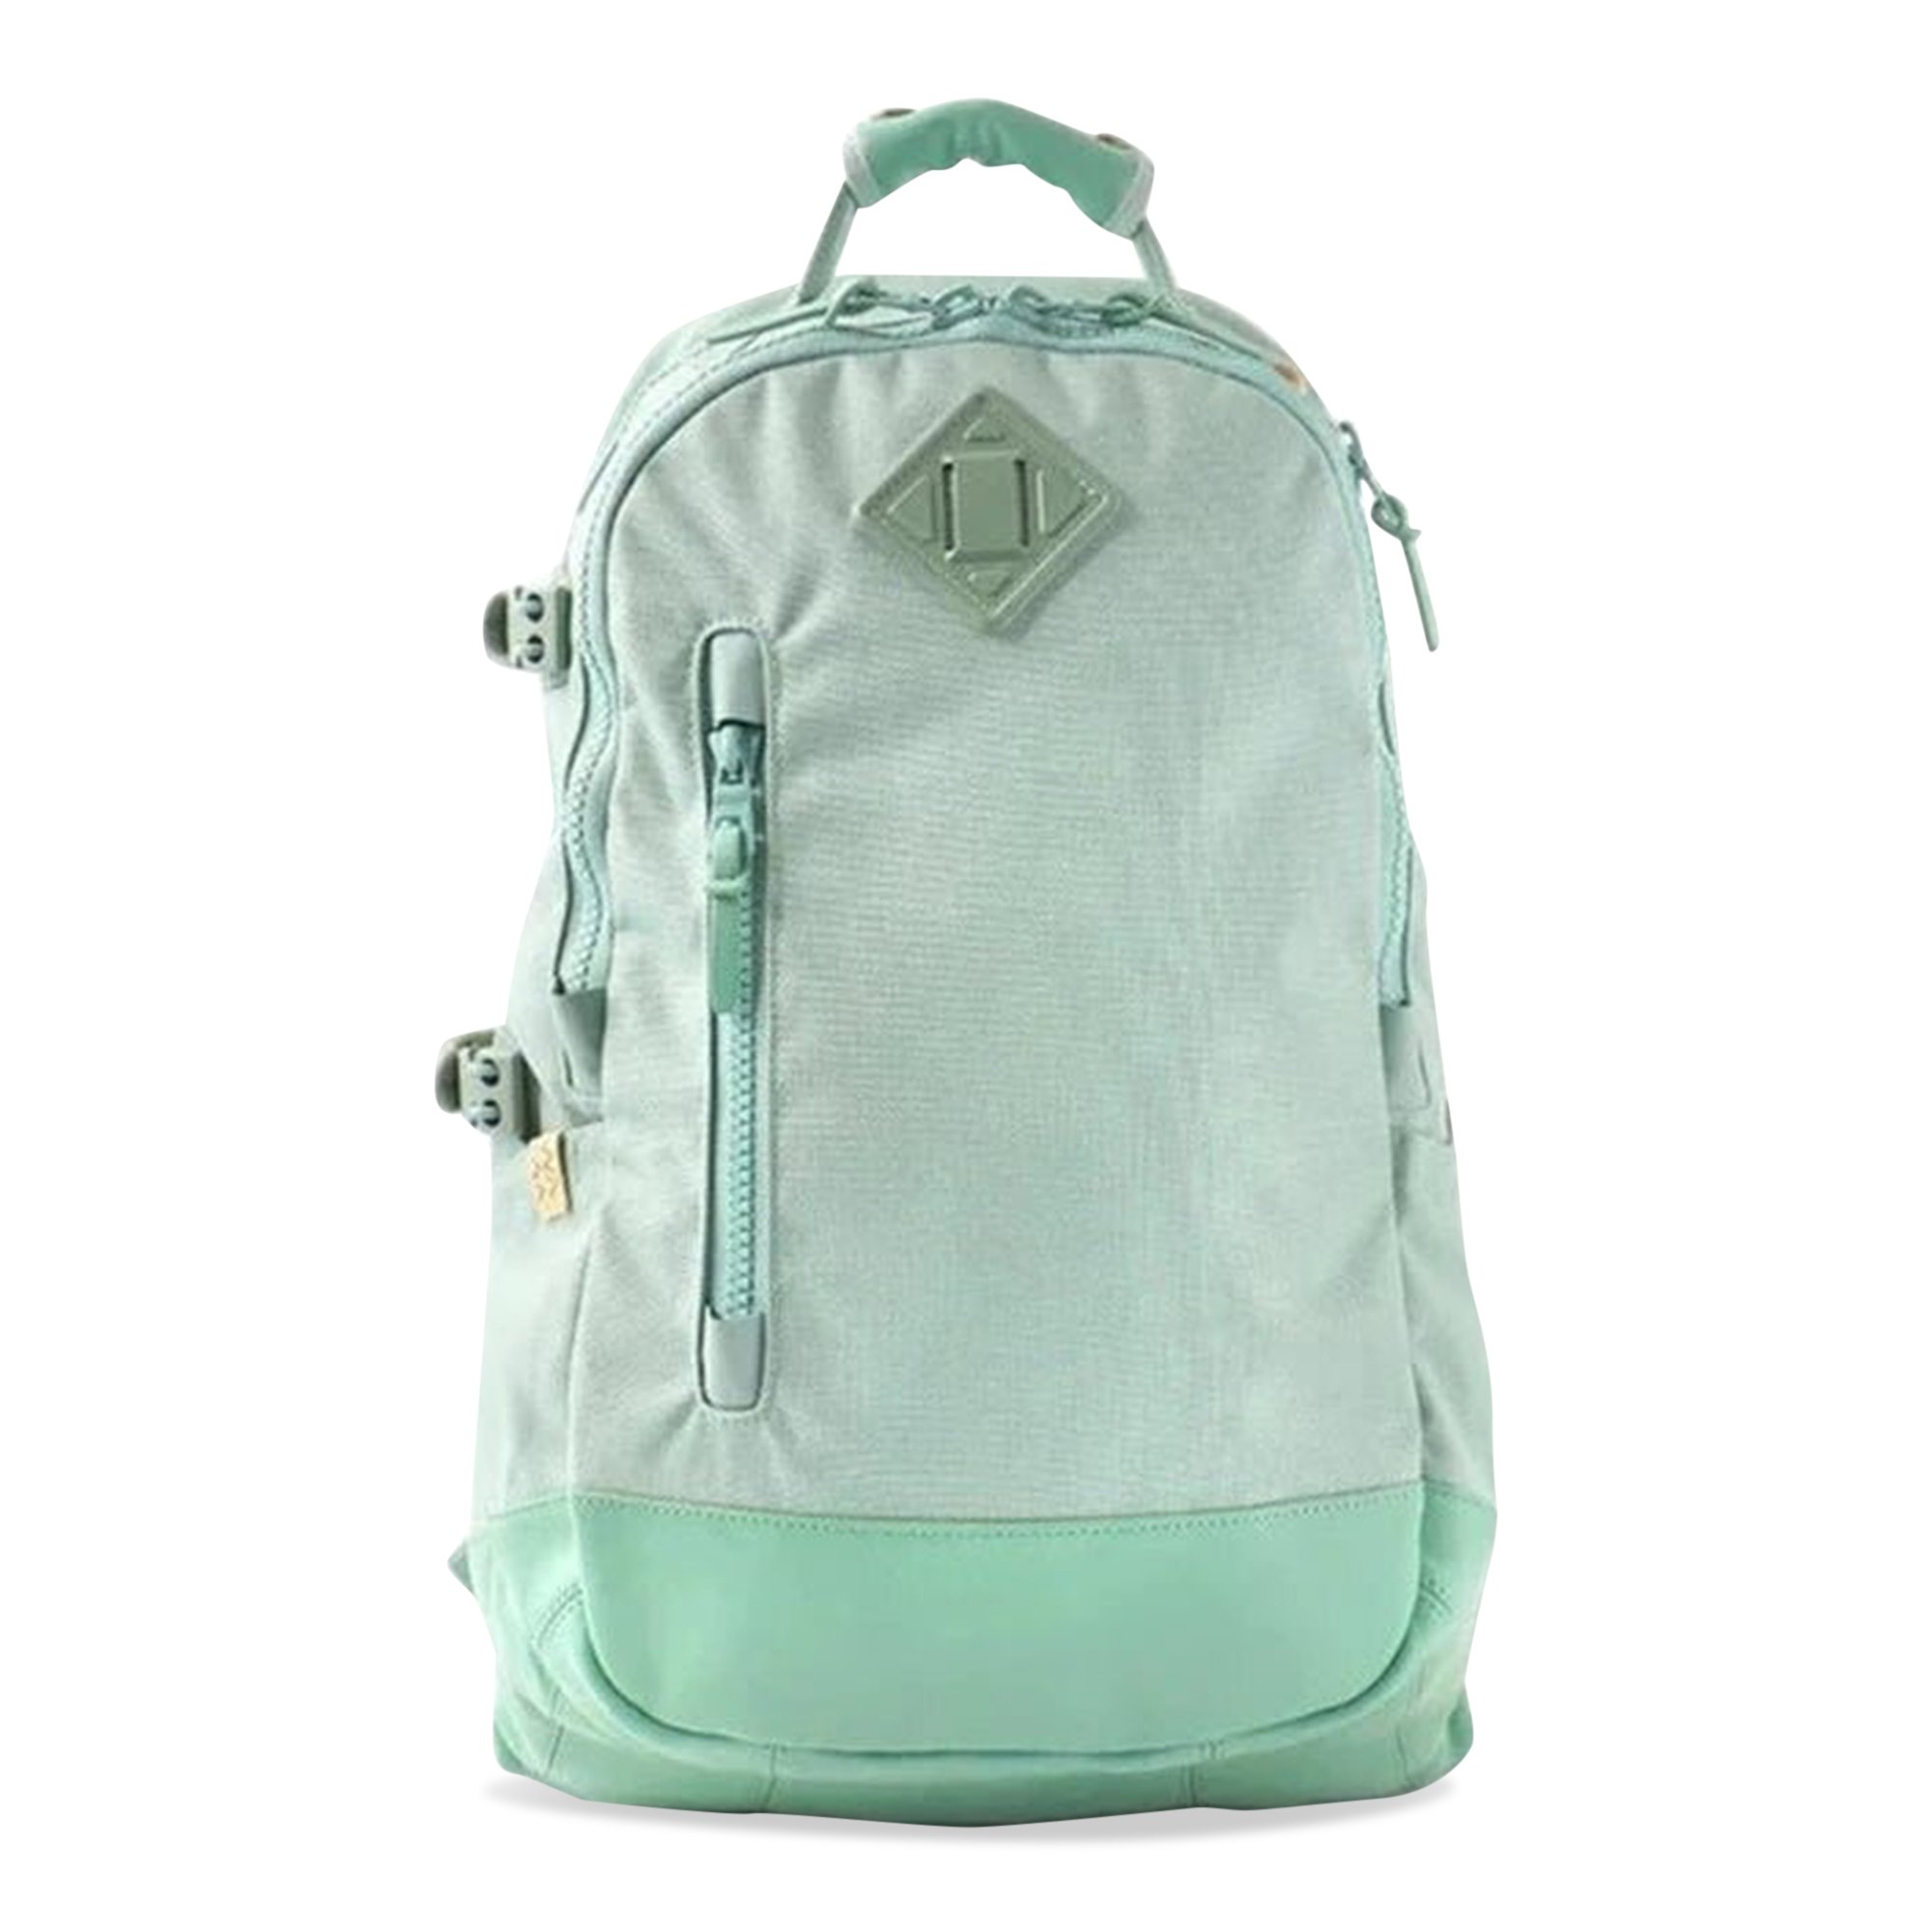 Buy Visvim Cordura 20L Backpack 'Light Green' - 122203003027 LIGH